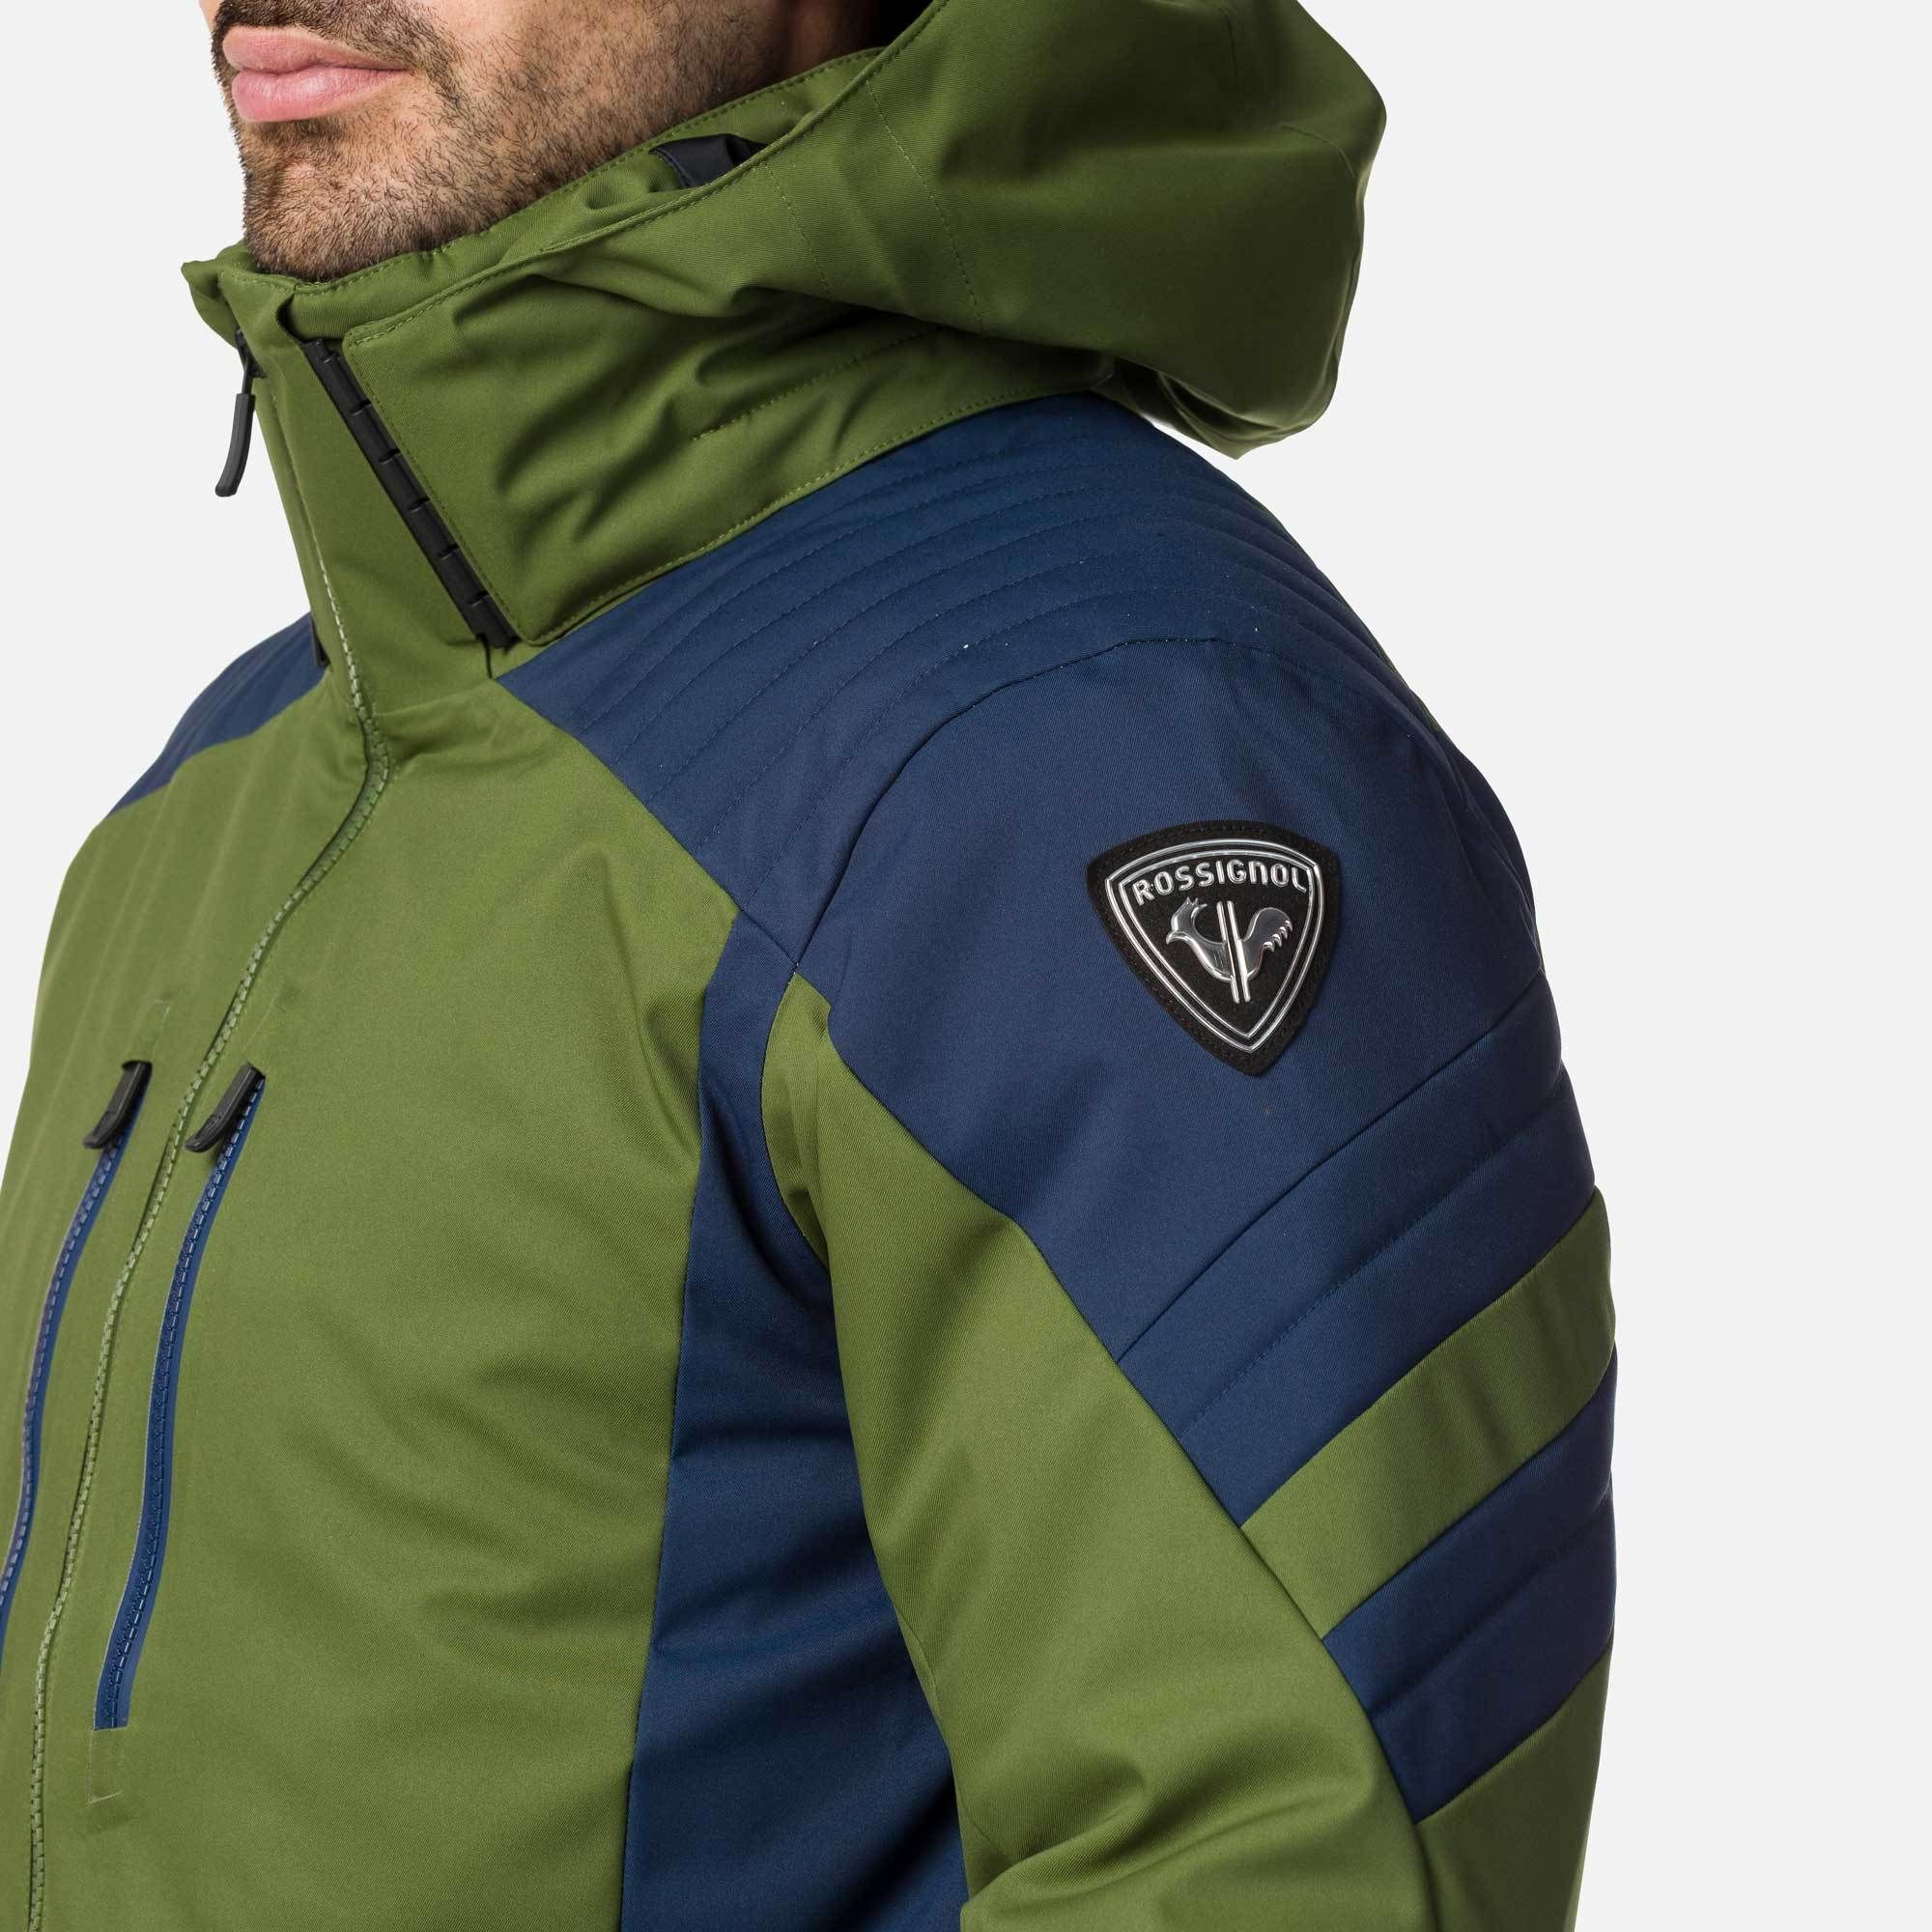 Rossignol Mens Ski Jacket – Size Medium – Green